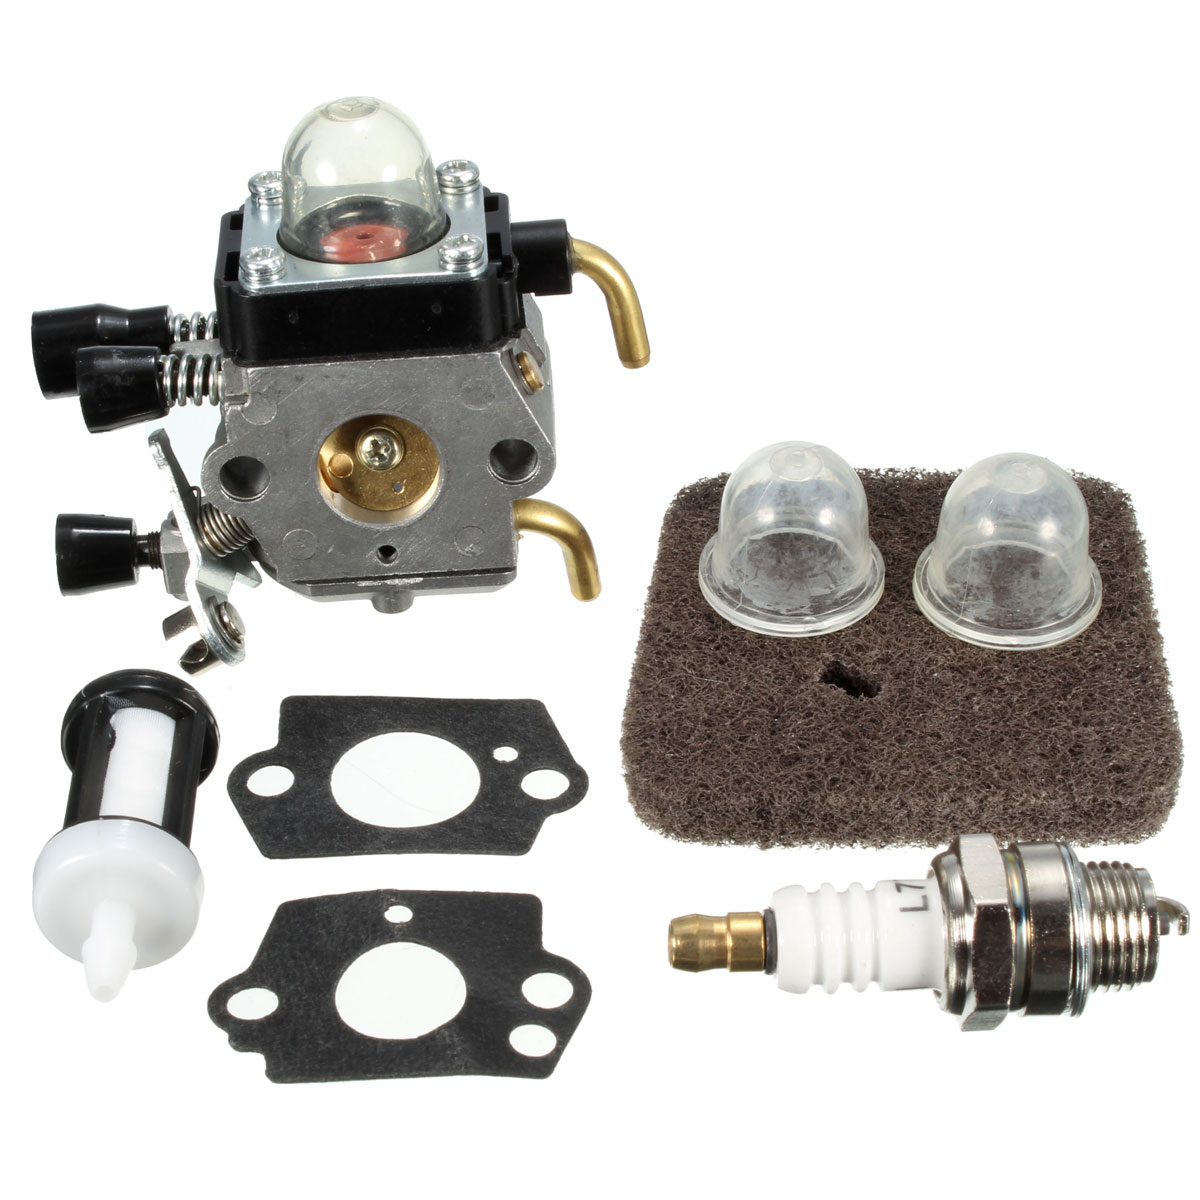 

Воздушный фильтр прокладка лампы для STIHL триммер FS45 FS46 fs46c зама Spark карбюратор карбюратор